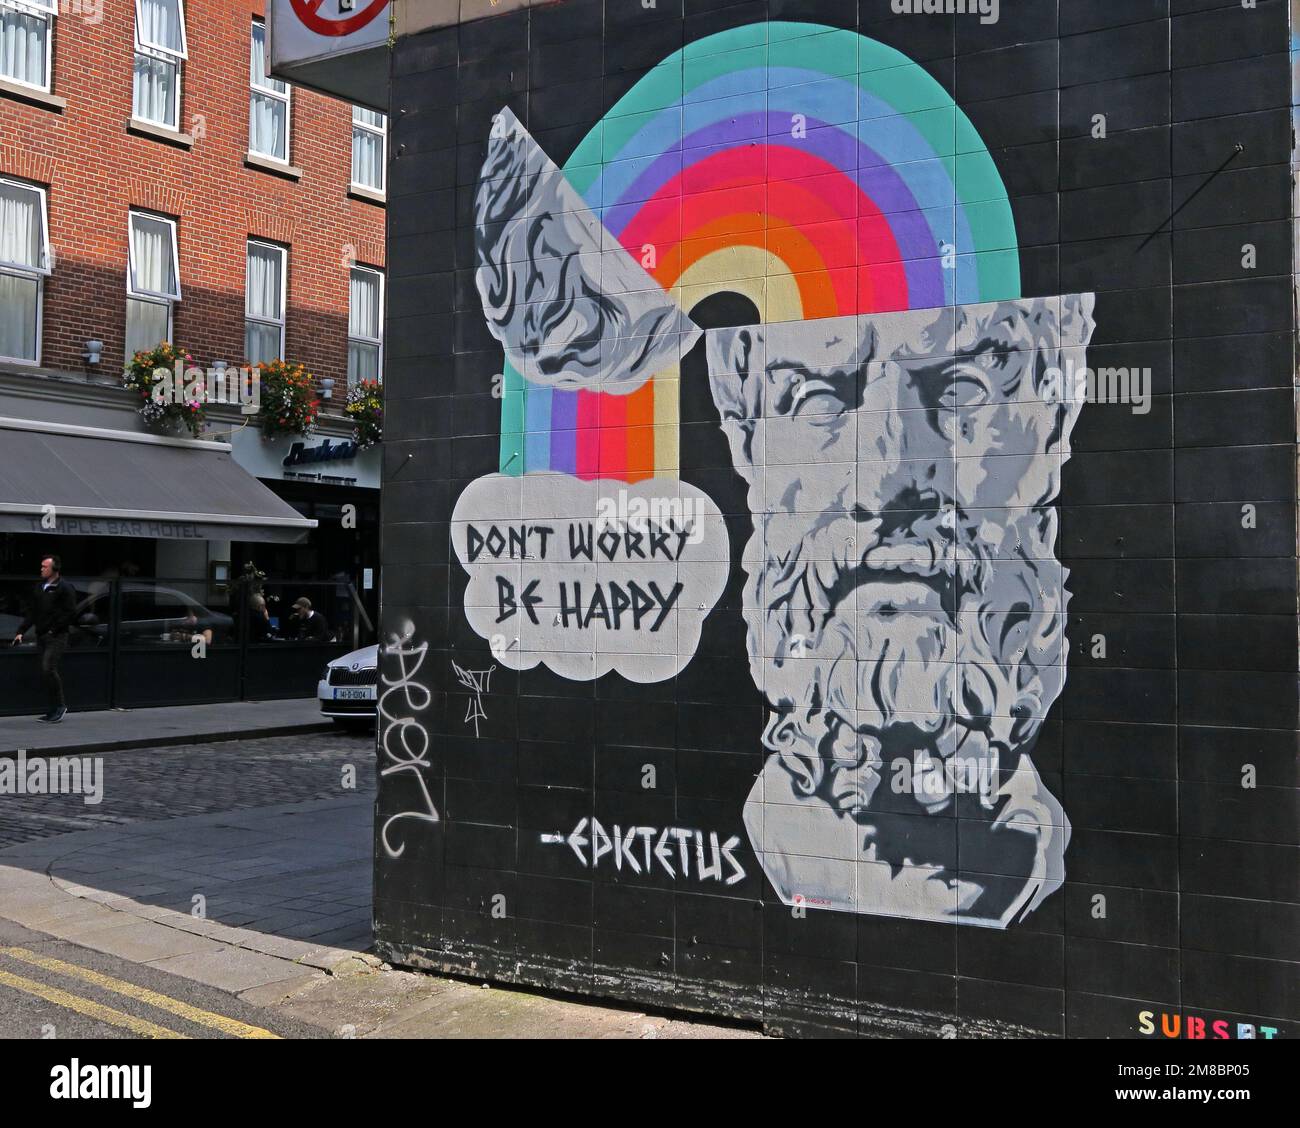 Ne vous inquiétez pas, soyez heureux, une citation d'Epktetus, Epictetus, graffito sur un mur de Dublin, arc-en-ciel émergeant de l'esprit Banque D'Images